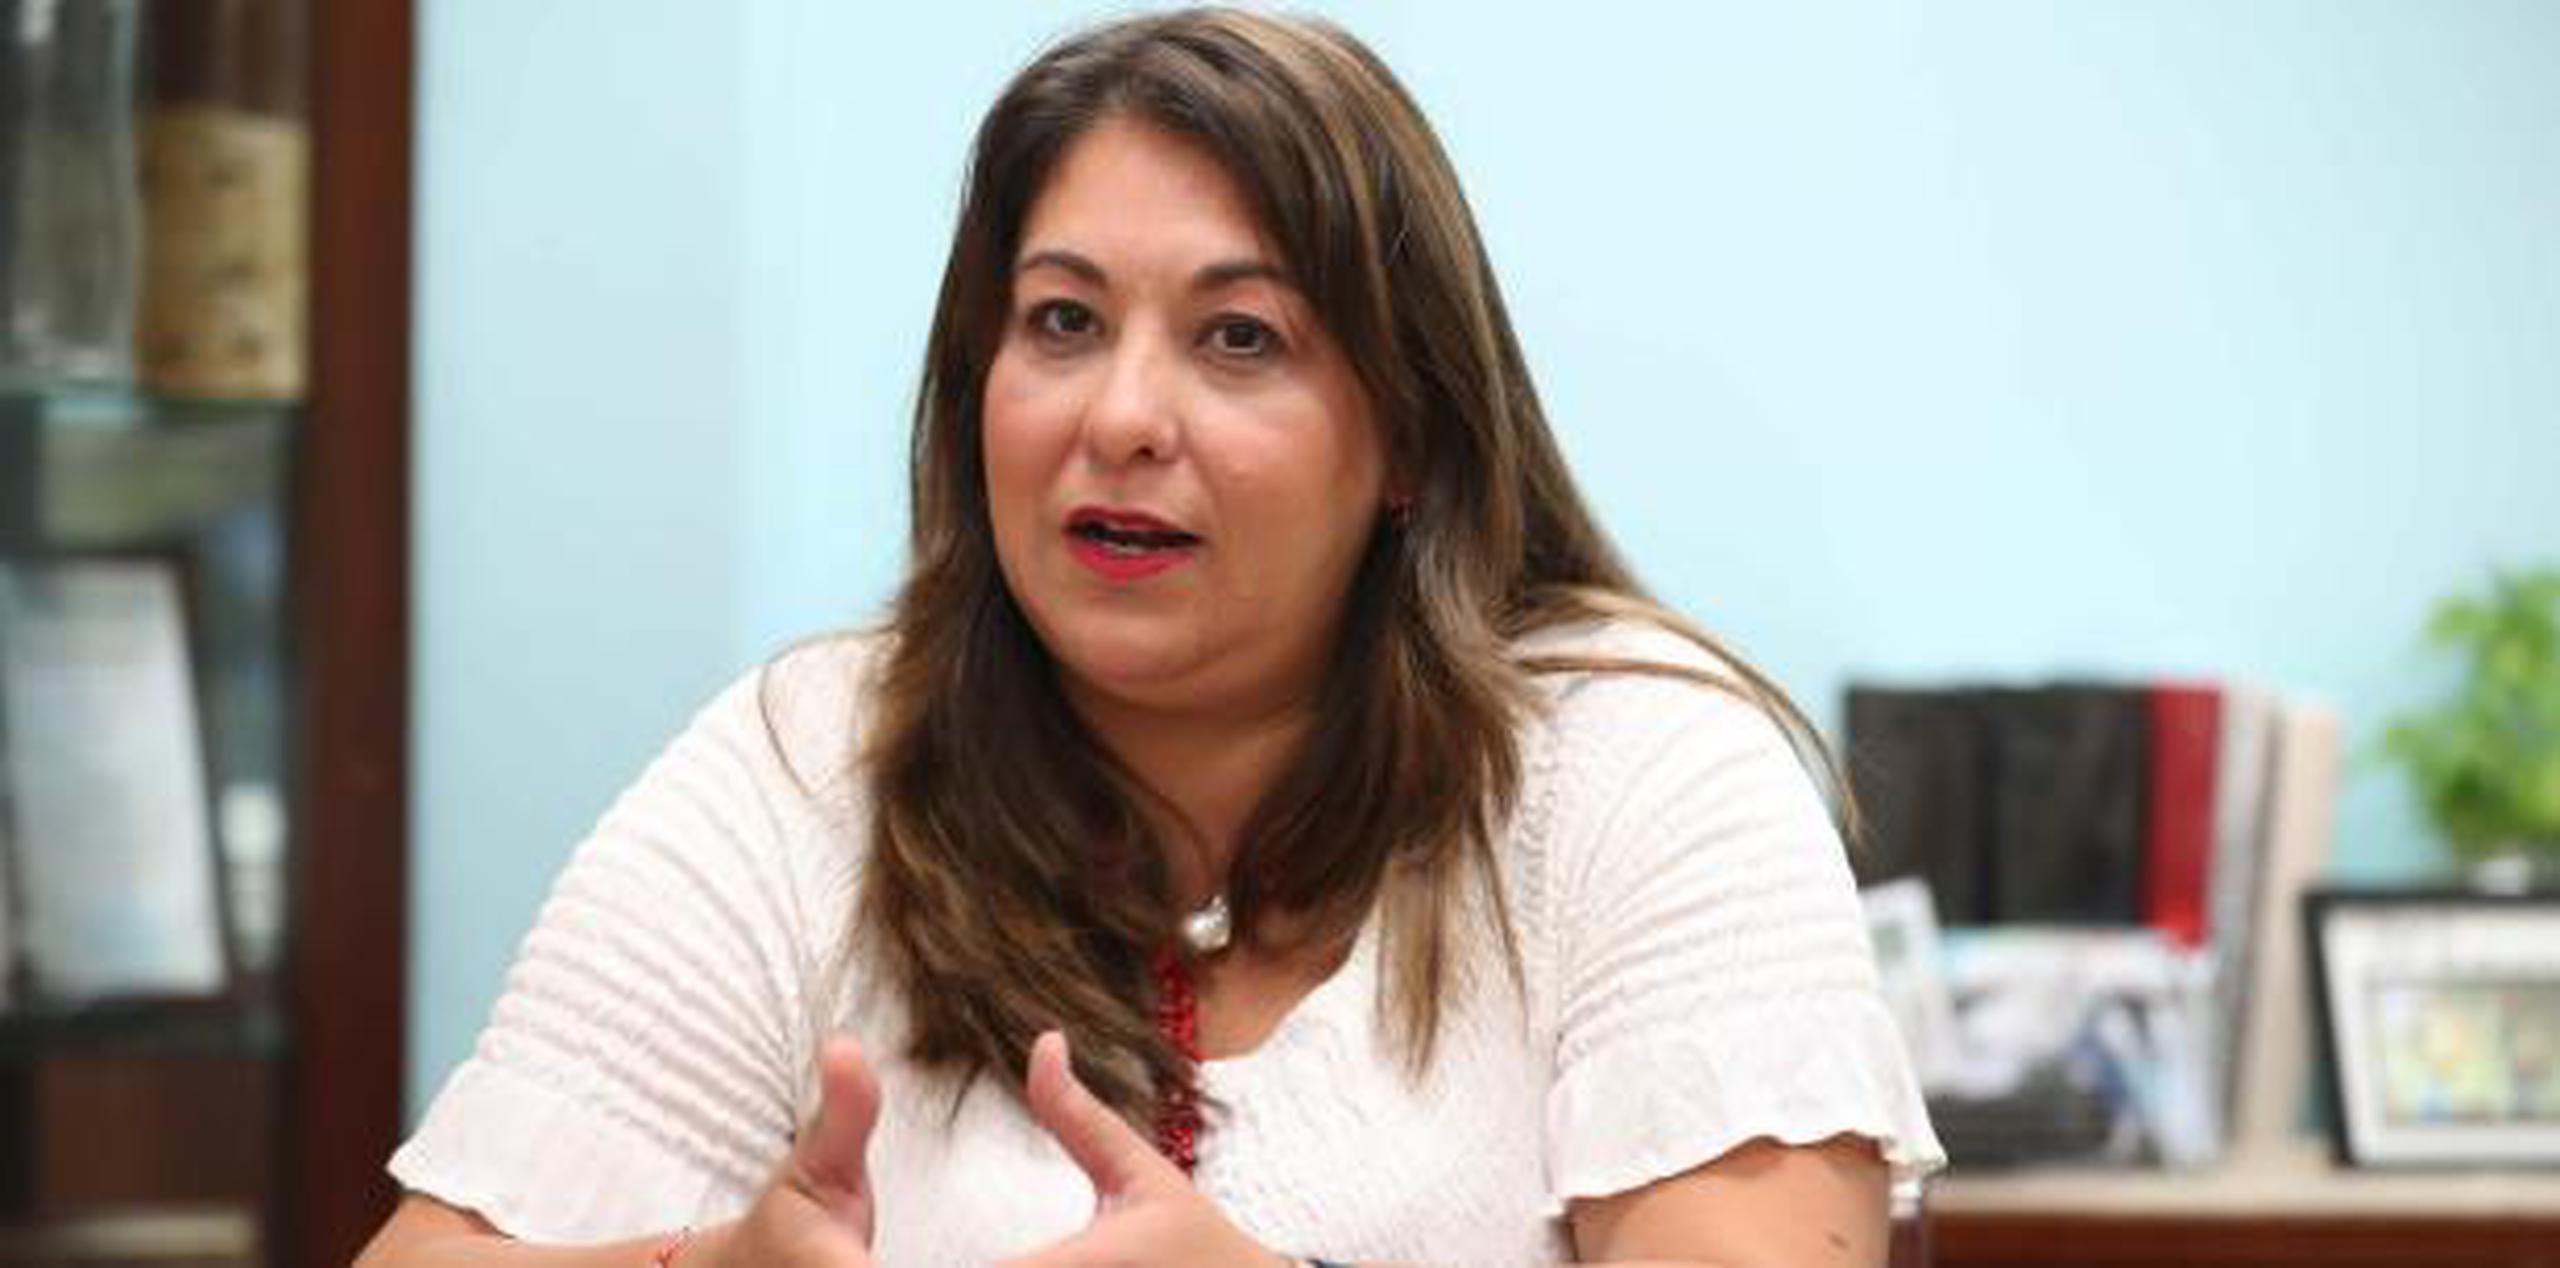 La directora de la Administración de Servicios de Salud Mental y Contra la Adicción, Suzanne Roig Fuertes, sugirió conversar para canalizar las preocupaciones.  (Archivo)